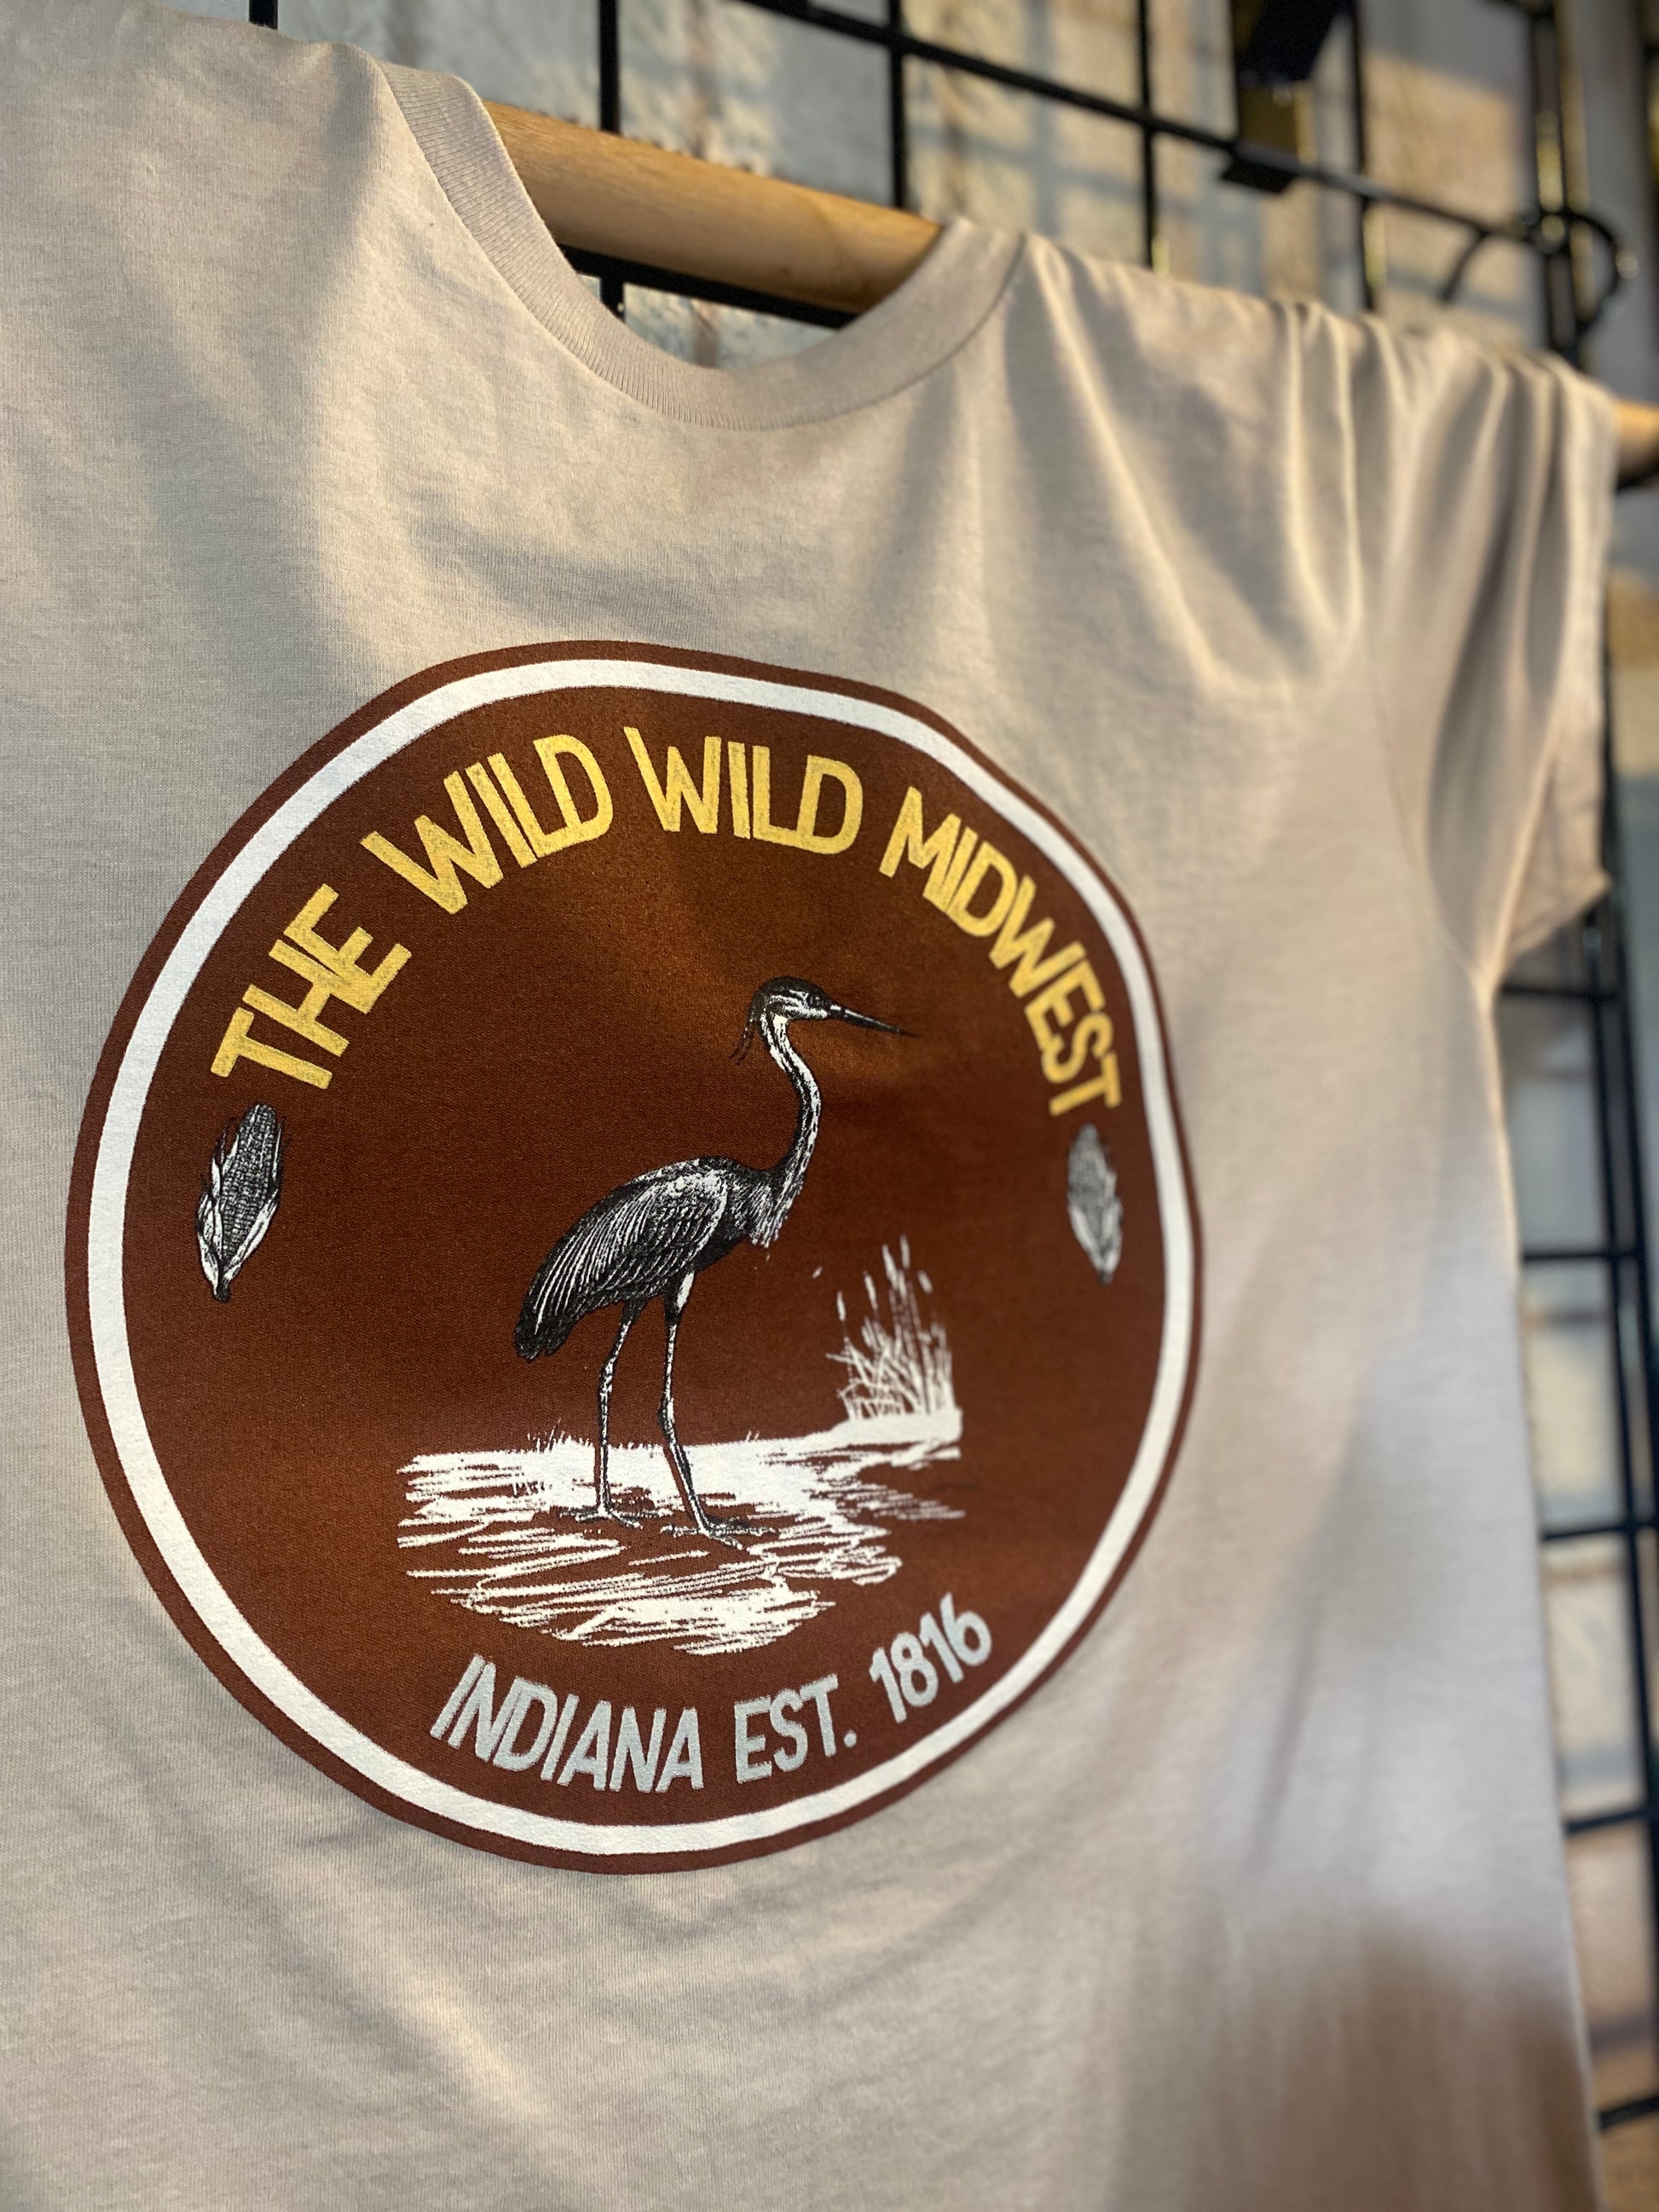 wild wild midwest great blue heron shirt